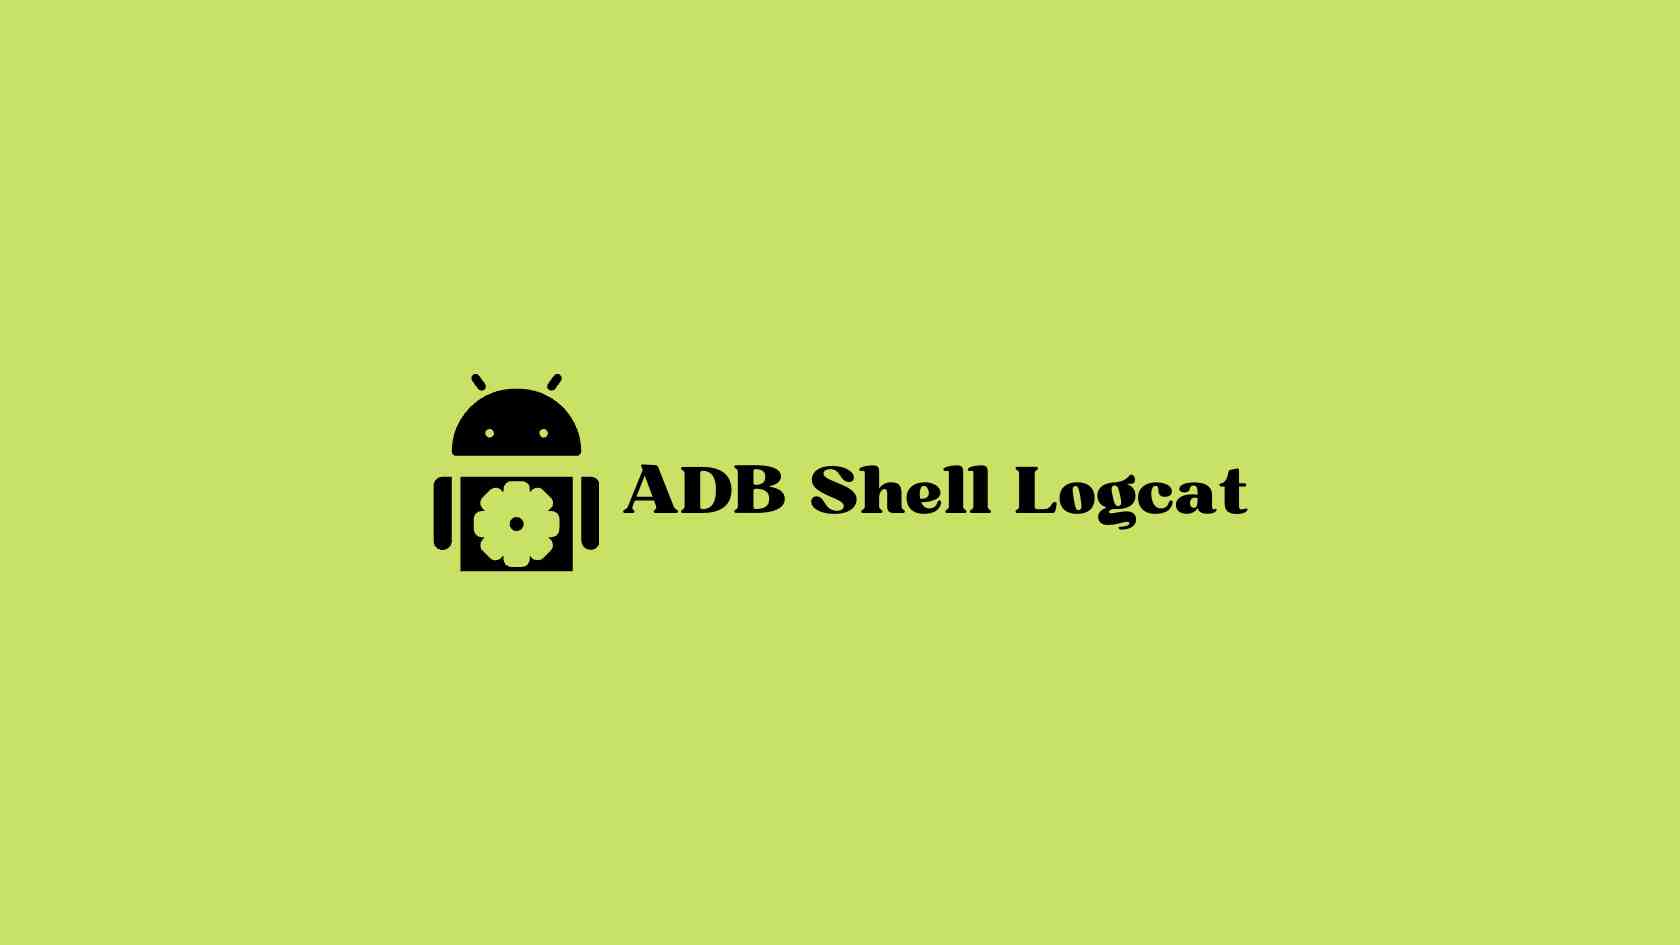 ADB Shell Logcat